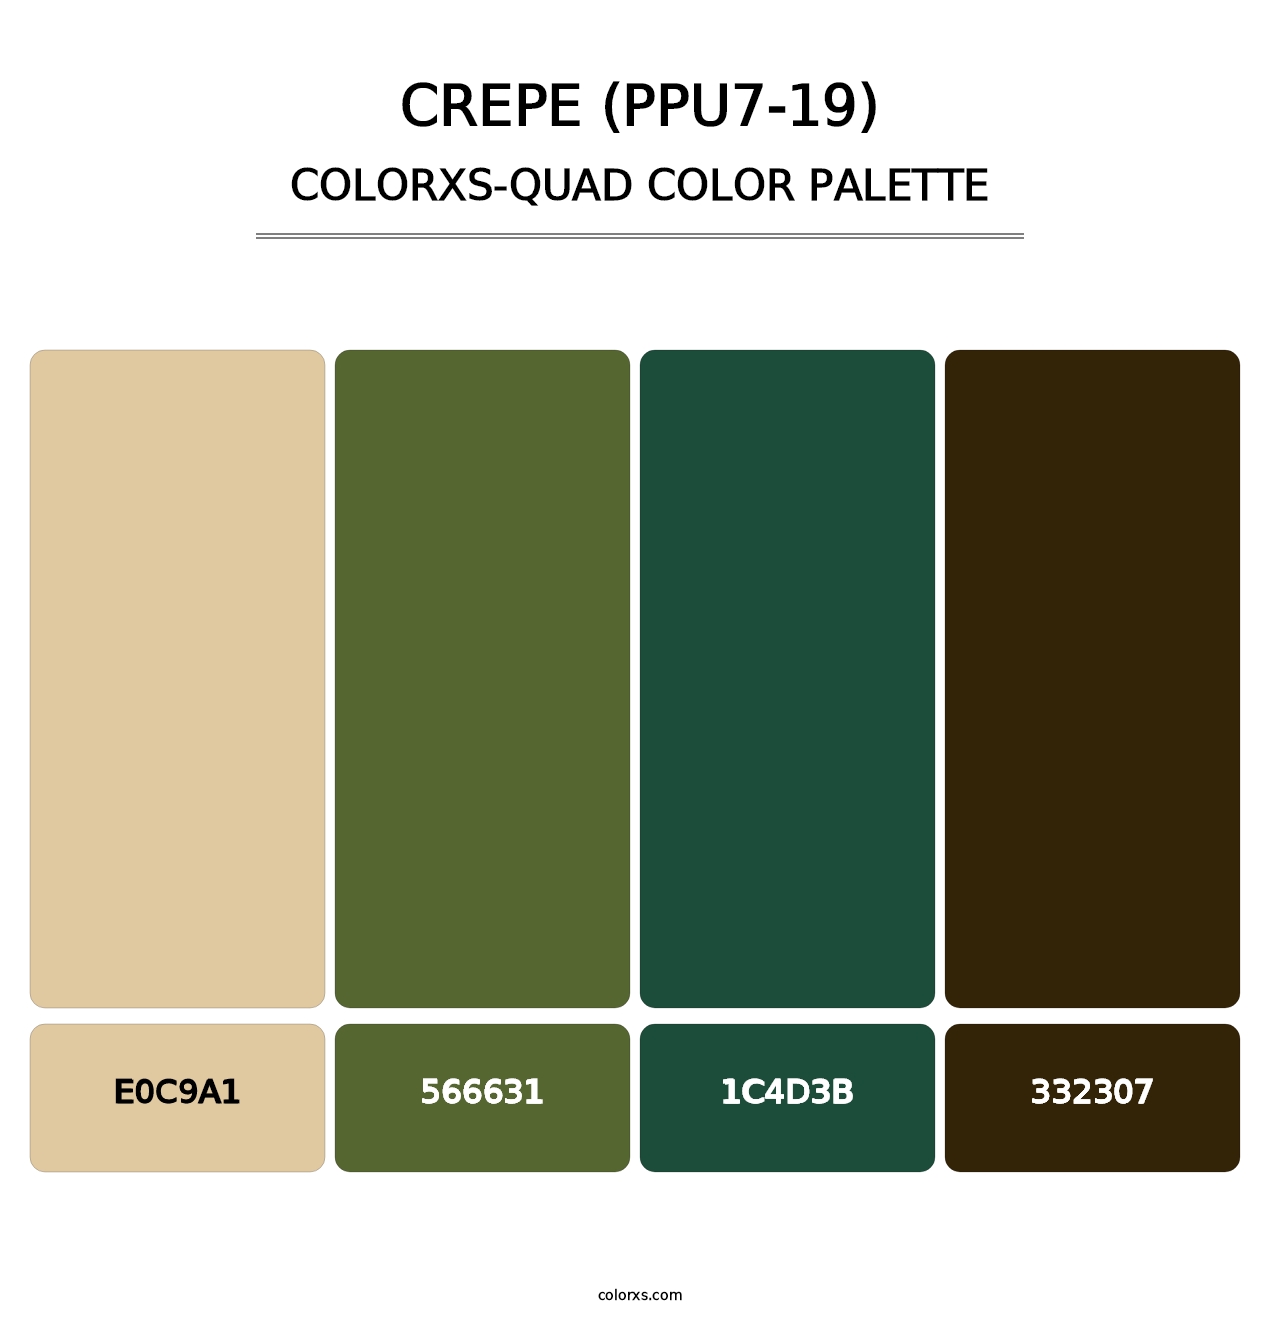 Crepe (PPU7-19) - Colorxs Quad Palette